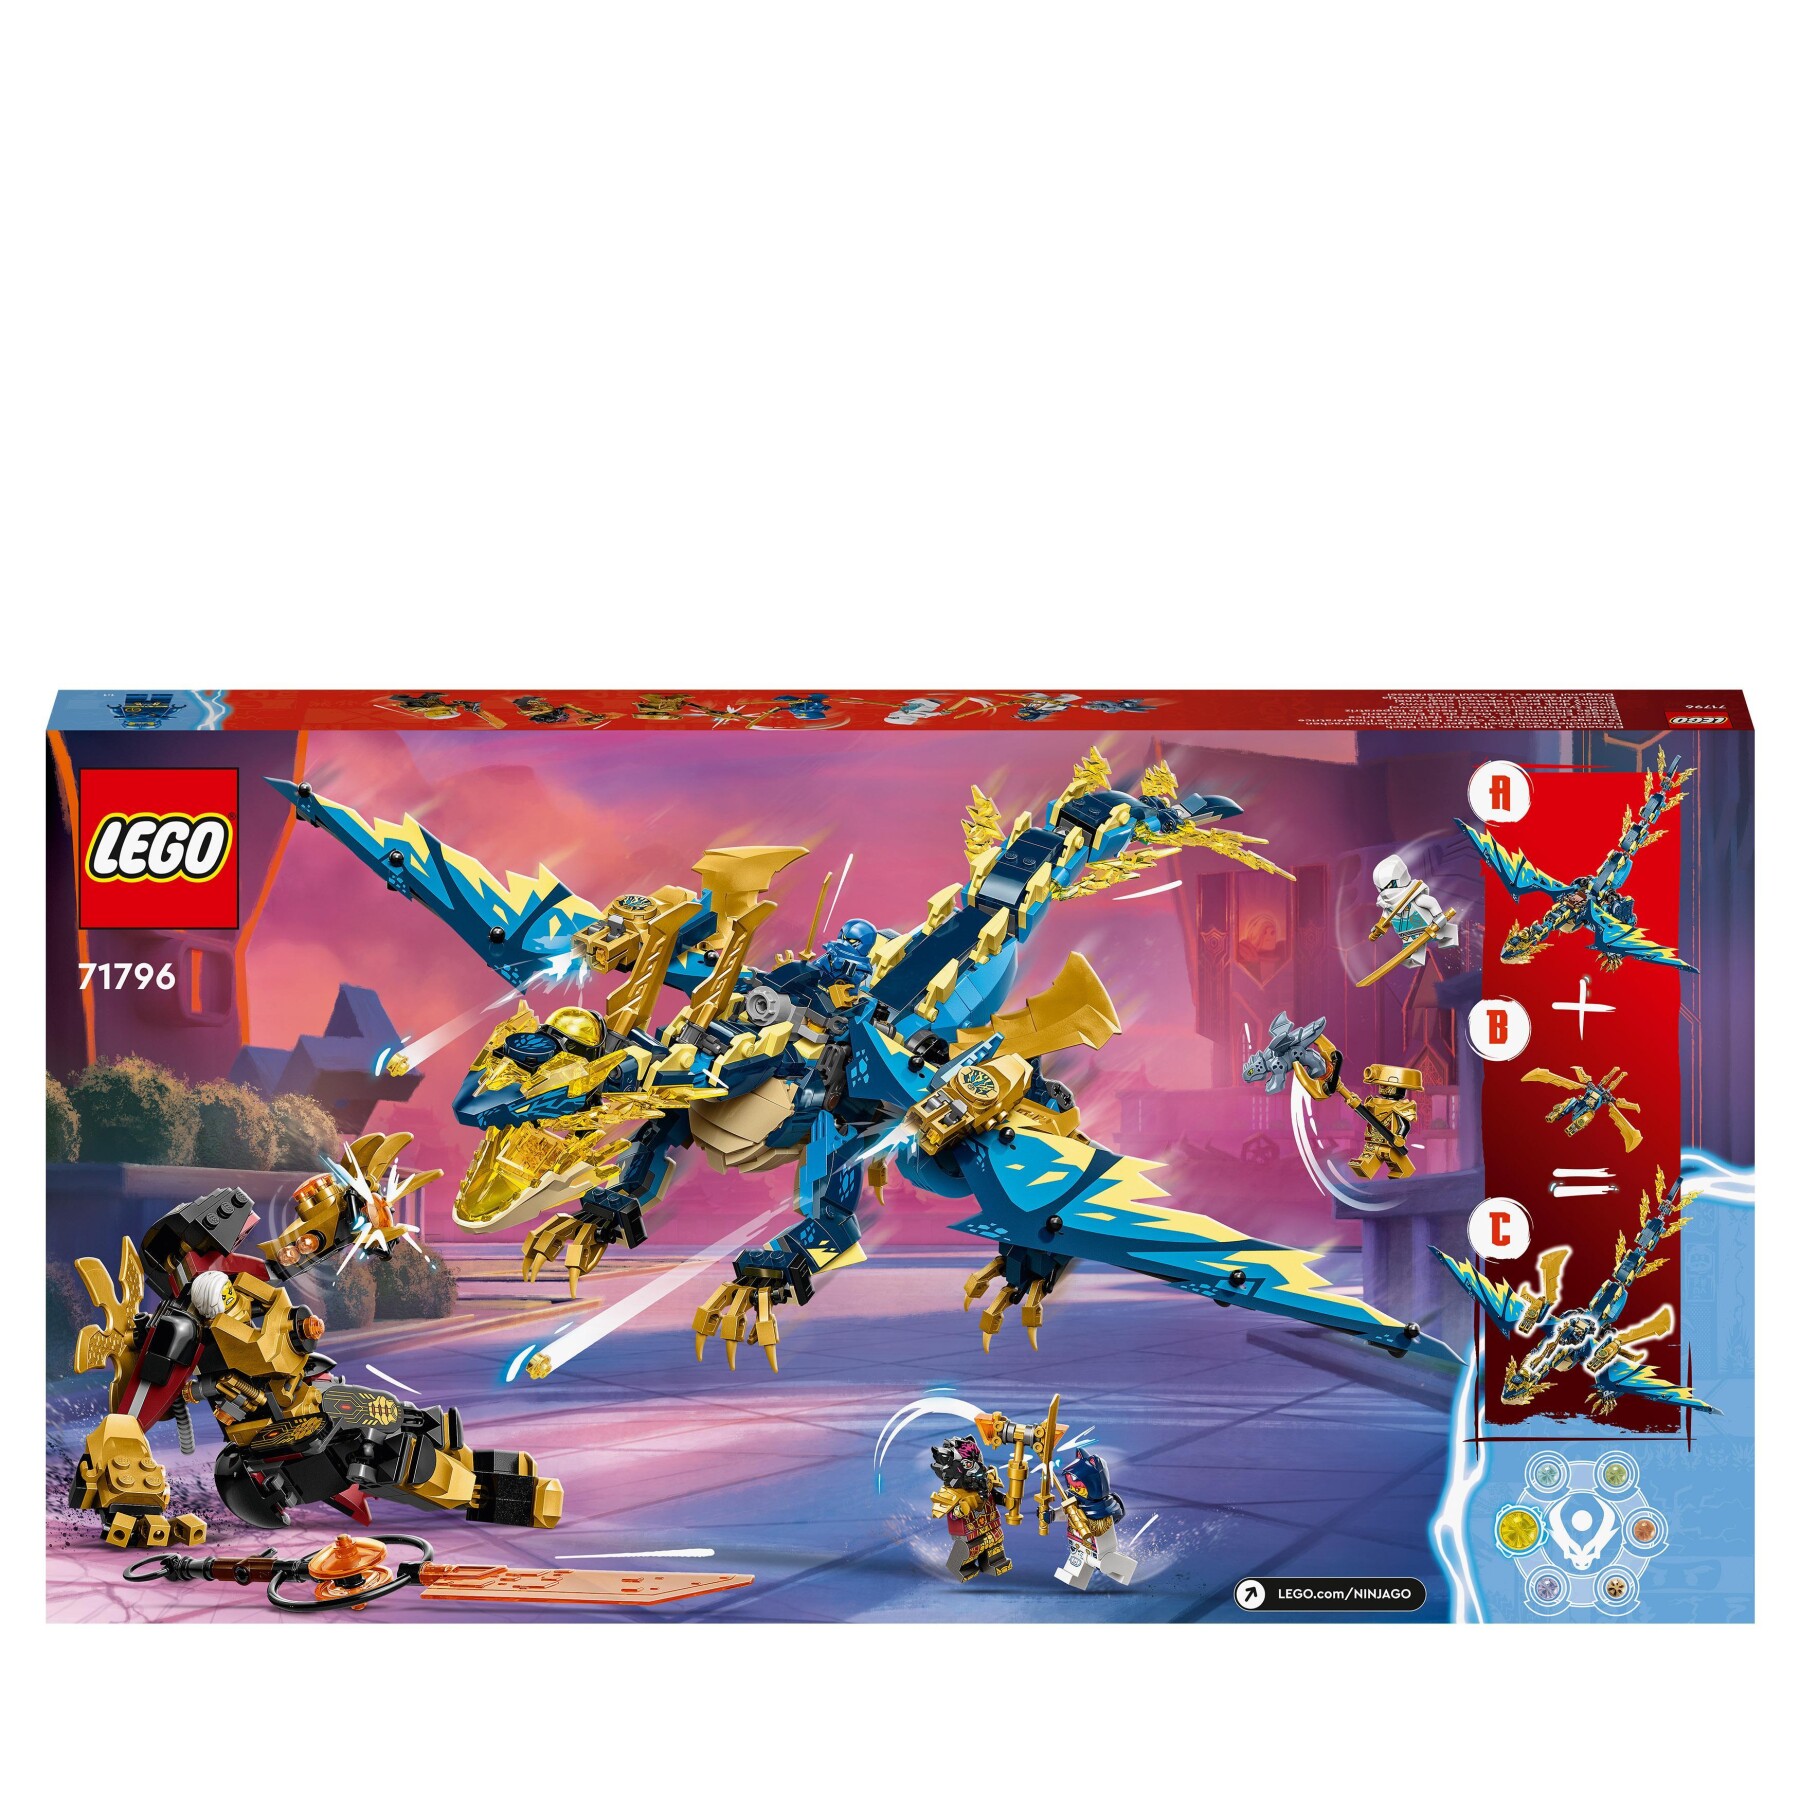 Lego ninjago 71796 dragone elementare vs. mech dell’imperatrice, set con drago giocattolo, action figure, flyer e 6 minifigure - LEGO NINJAGO